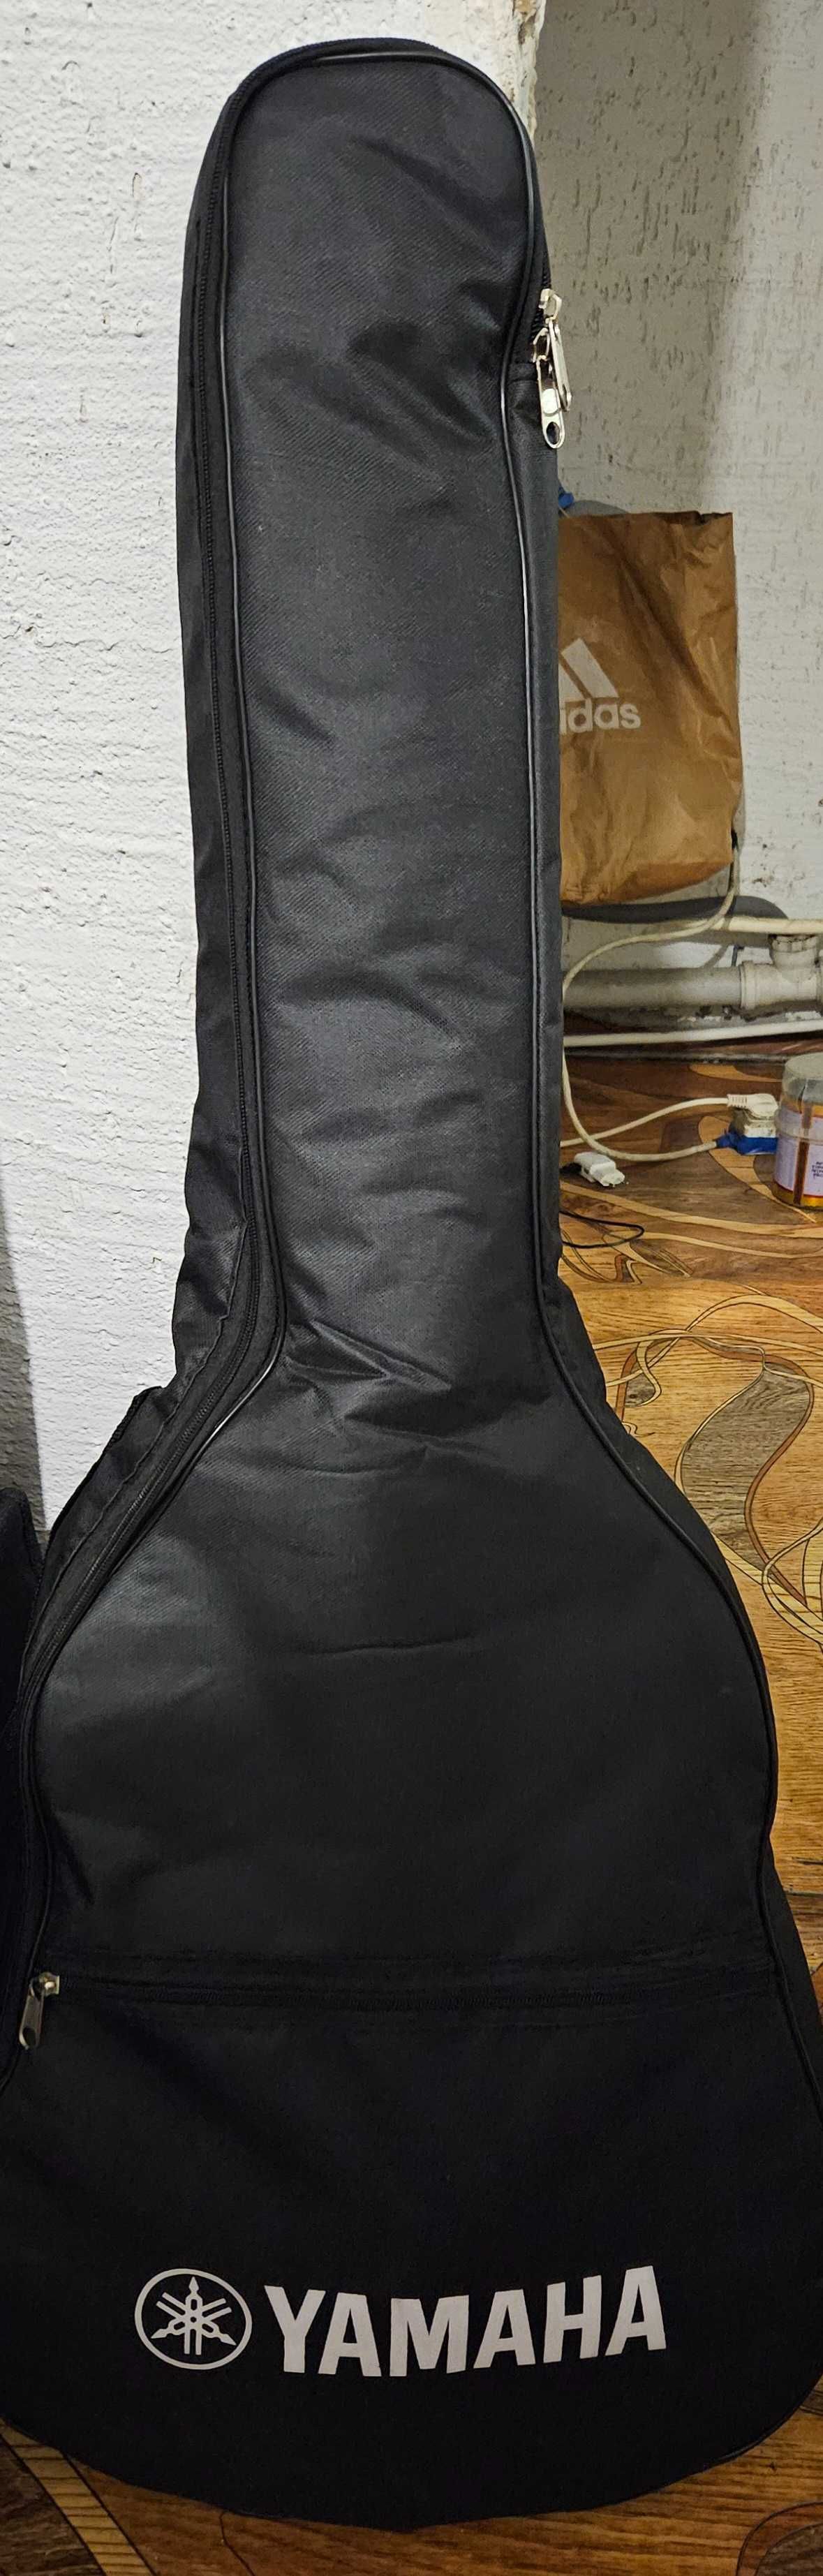 Акустическая гитара Yamaha FG 850. В хорошем состоянии.